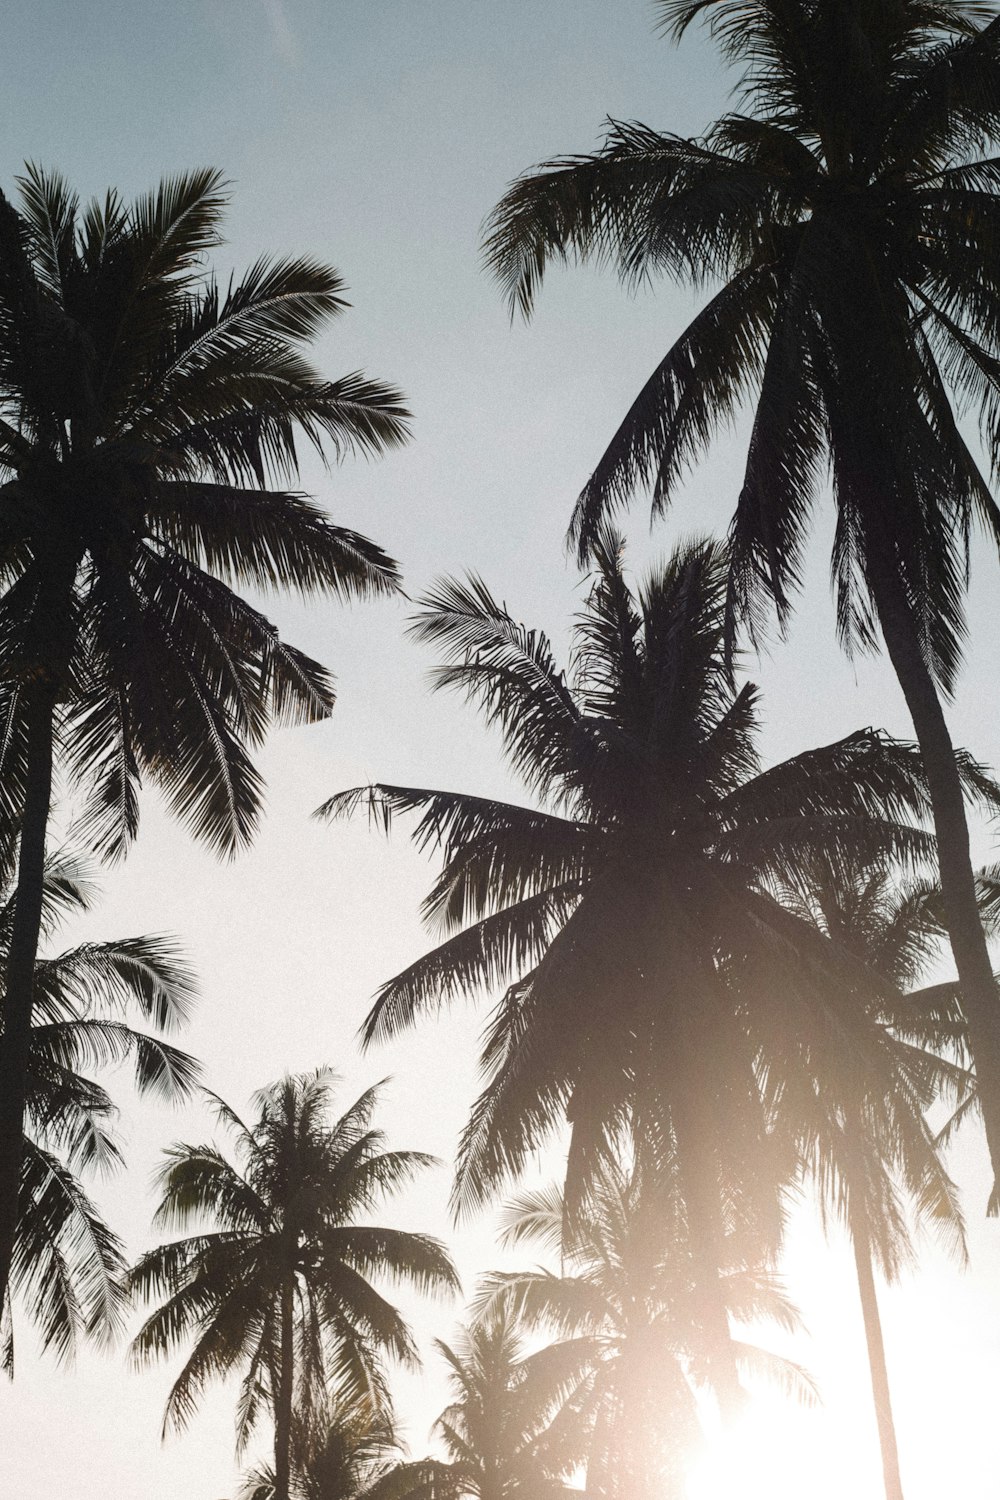 Die Sonne scheint durch die Palmen